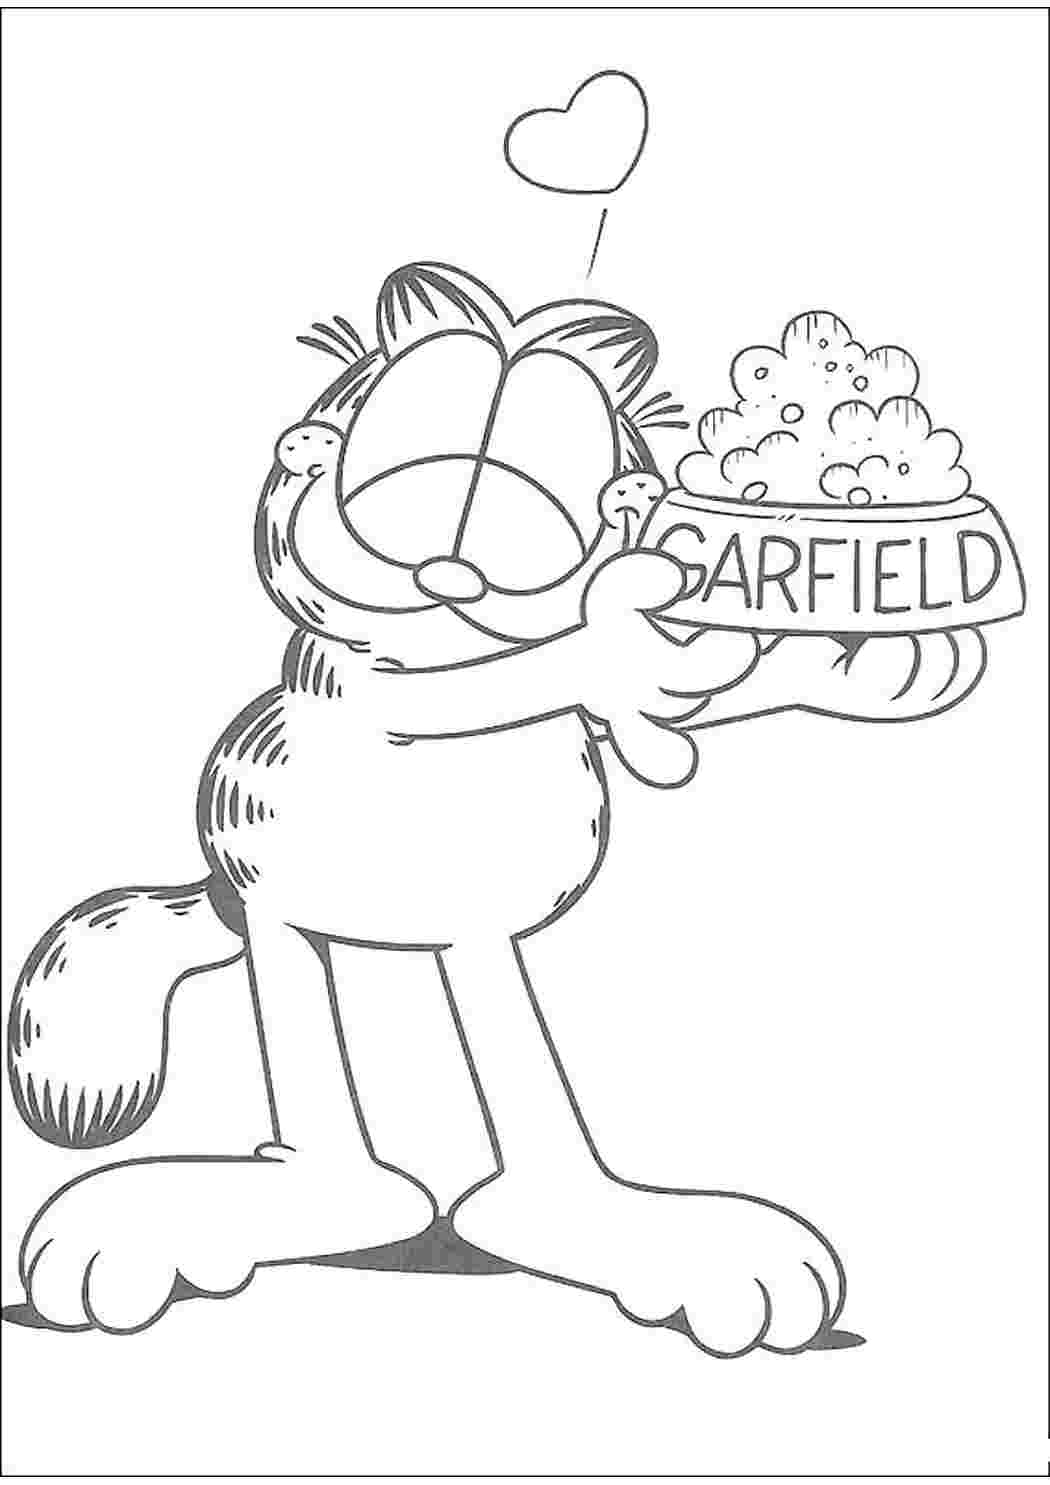 Матвей и нарисованный кот Гарфилд ( рассказ о том, что надо завершать начатые дела)